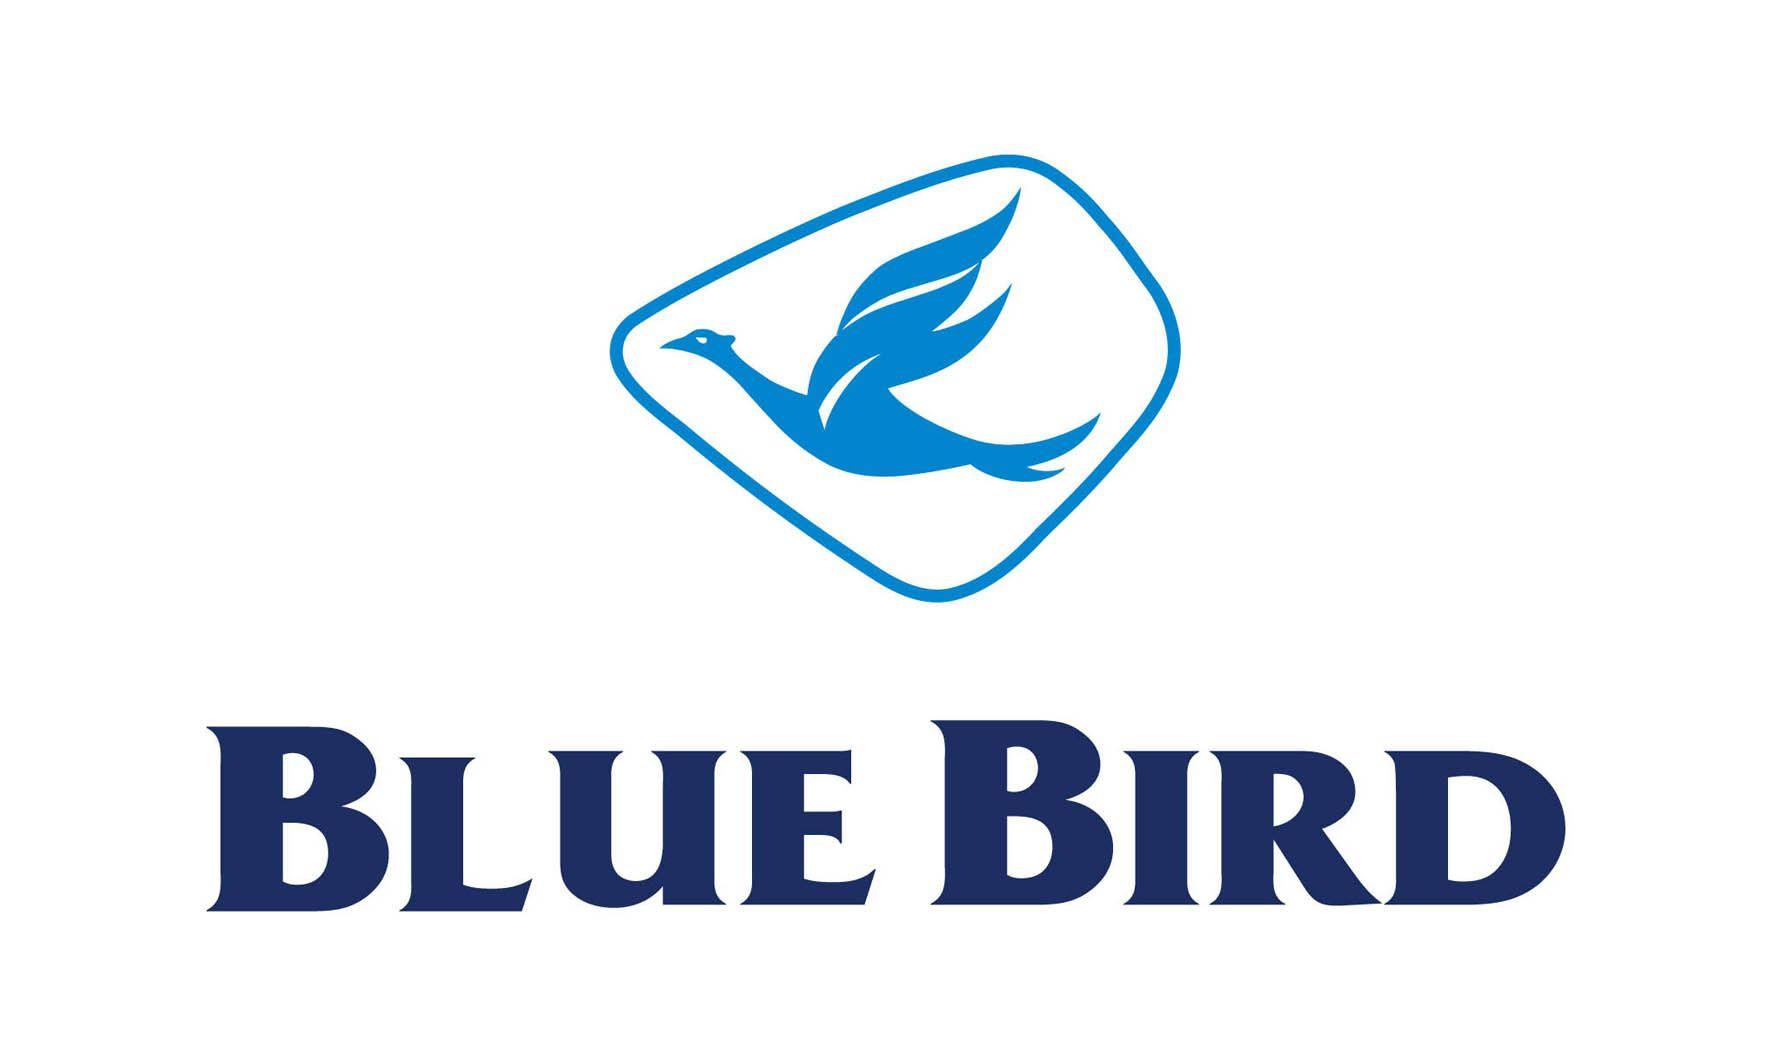 Blue Bird Taxi Logo - Blue bird Logos